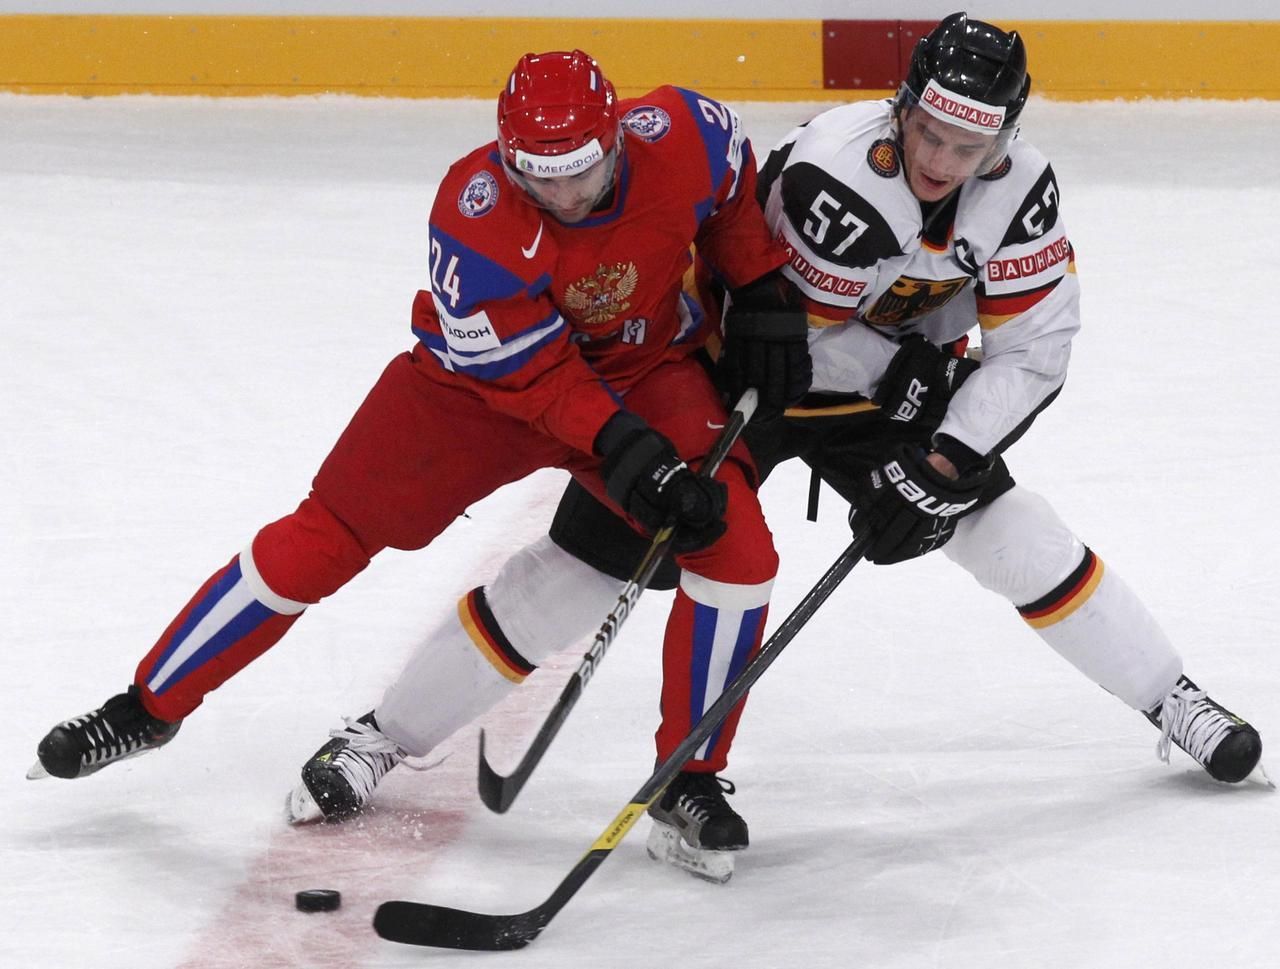 MS v hokeji 2012: Rusko - Německo (Popov, Goc)